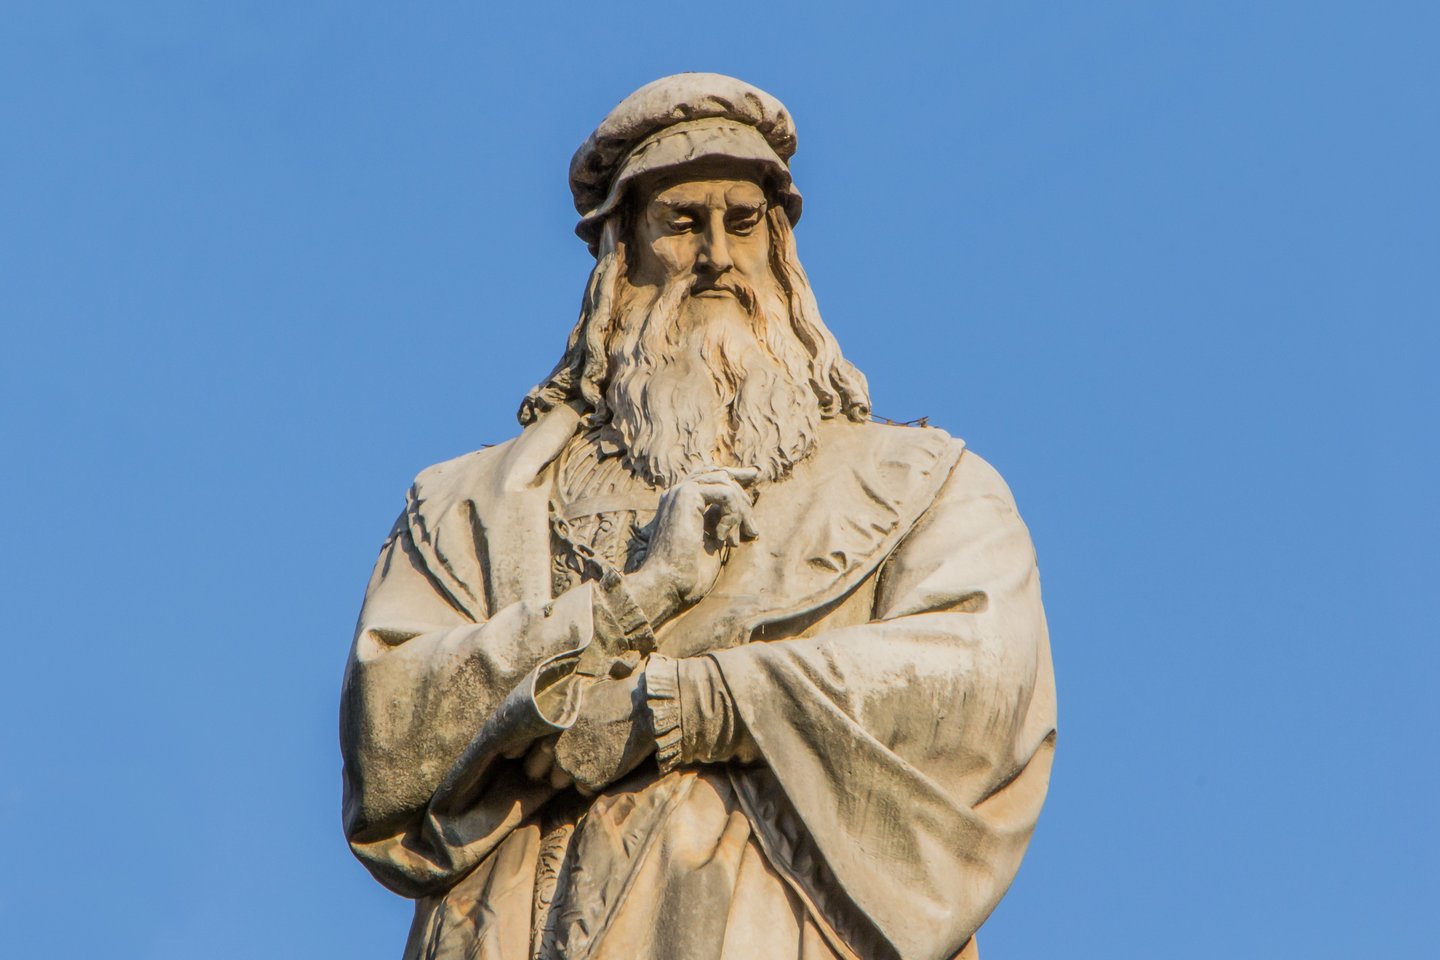  Naujas tyrimas skelbia: dėl Leonardo da Vinci unikaliai tikslaus sugebėjimo plokščiuose paviršiuose perteikti objektų perspektyvą kaltos jo akys.<br> 123RF nuotr.